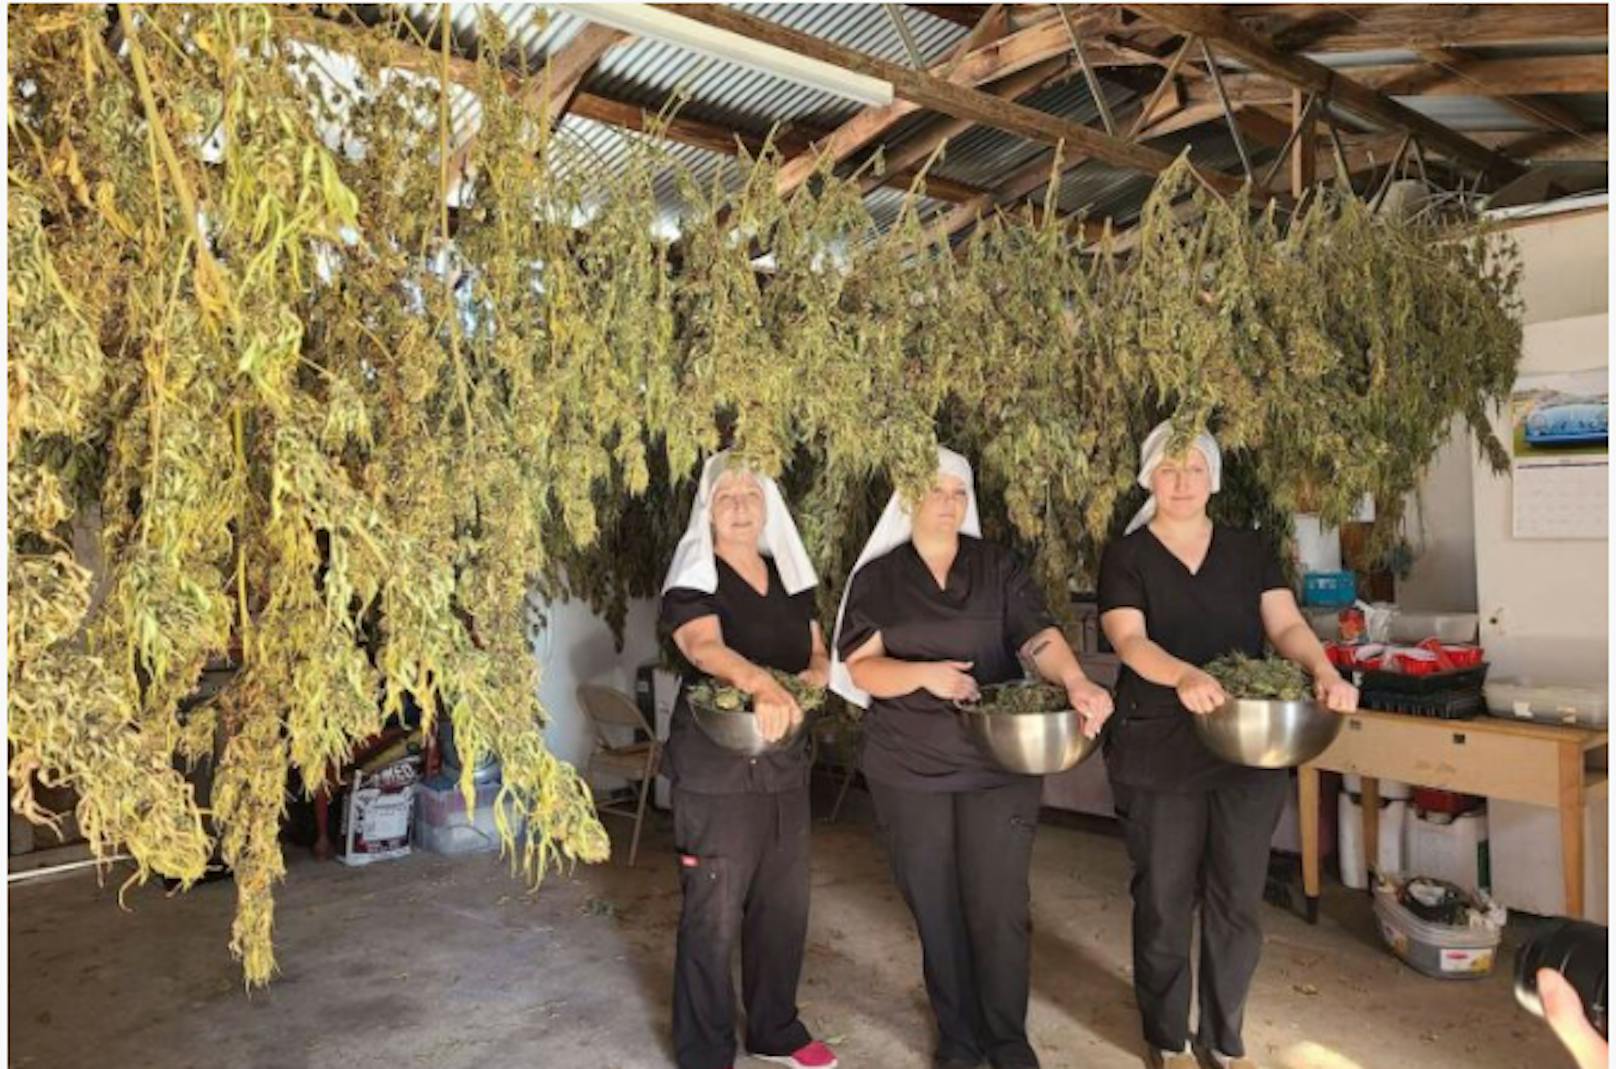 Mit Cannabis verdienen die Frauen, die sich wie Nonnen kleiden, 1 Million Dollar pro Jahr.